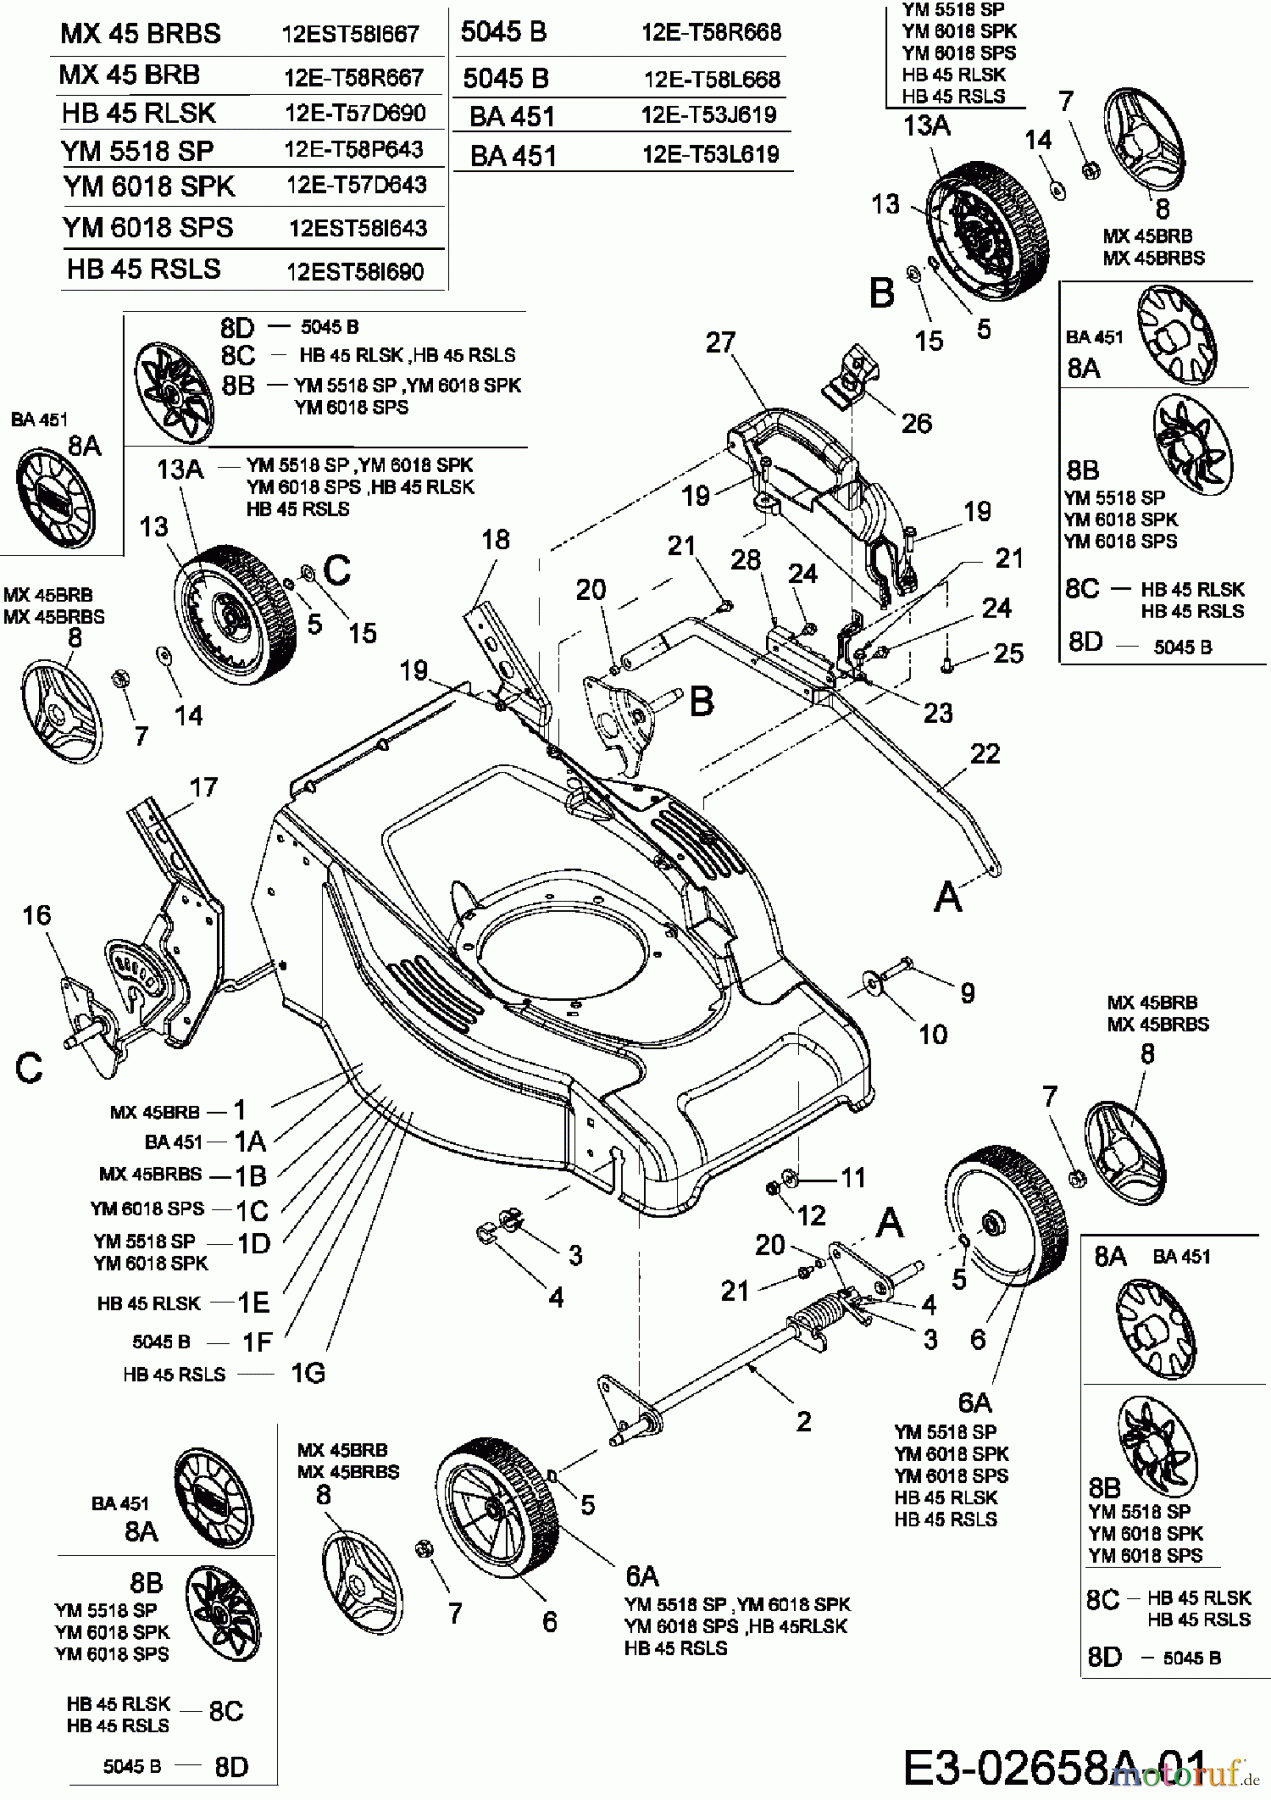  Mac Allister Motormäher mit Antrieb 5045 B 12E-T58L668  (2006) Räder, Schnitthöhenverstellung